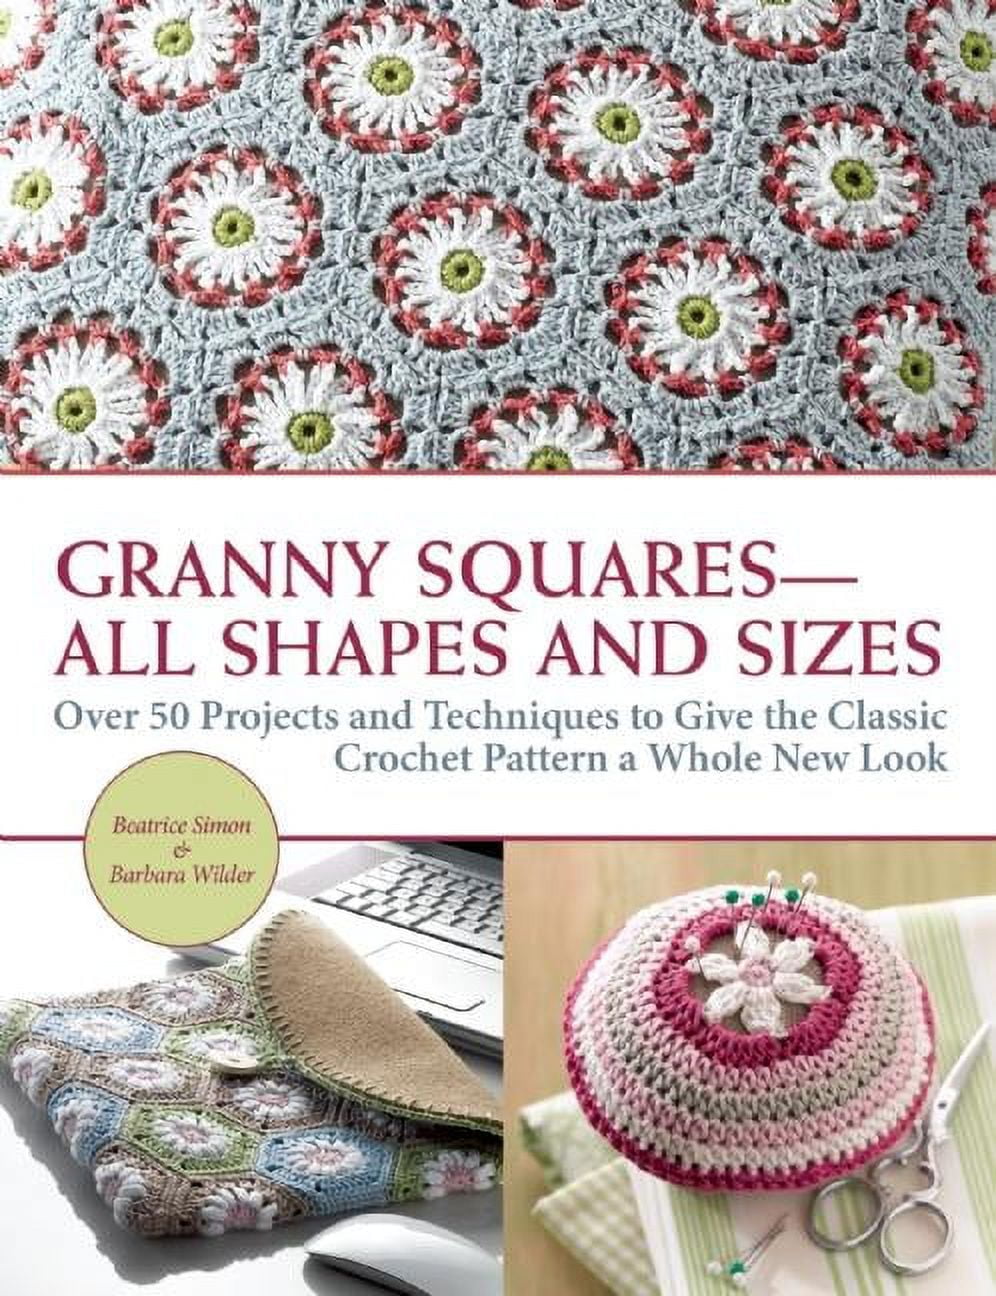 Modern Granny Stitch Crochet: Crochet Clothes and Accessories Using the Granny Square Stitch [Book]